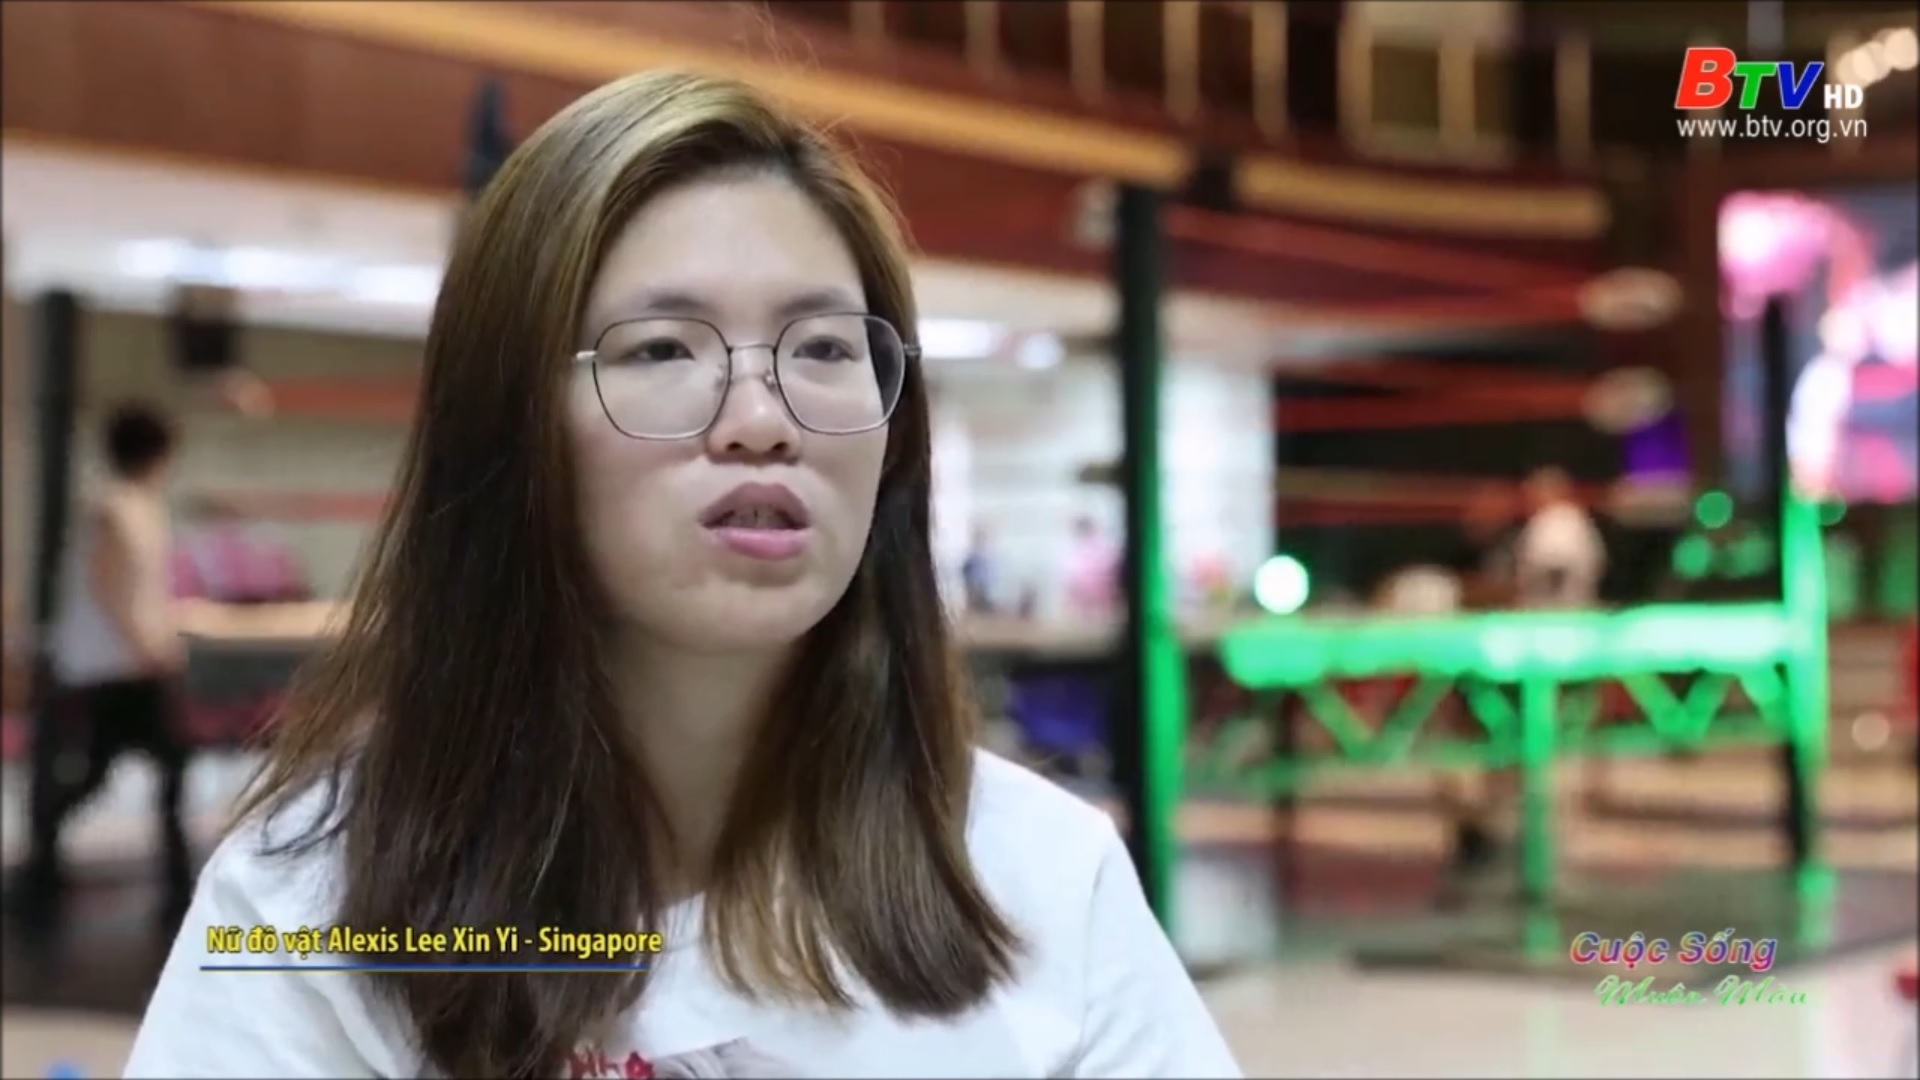 Gặp nữ đô vật chuyên nghiệp đầu tiên của Singapore